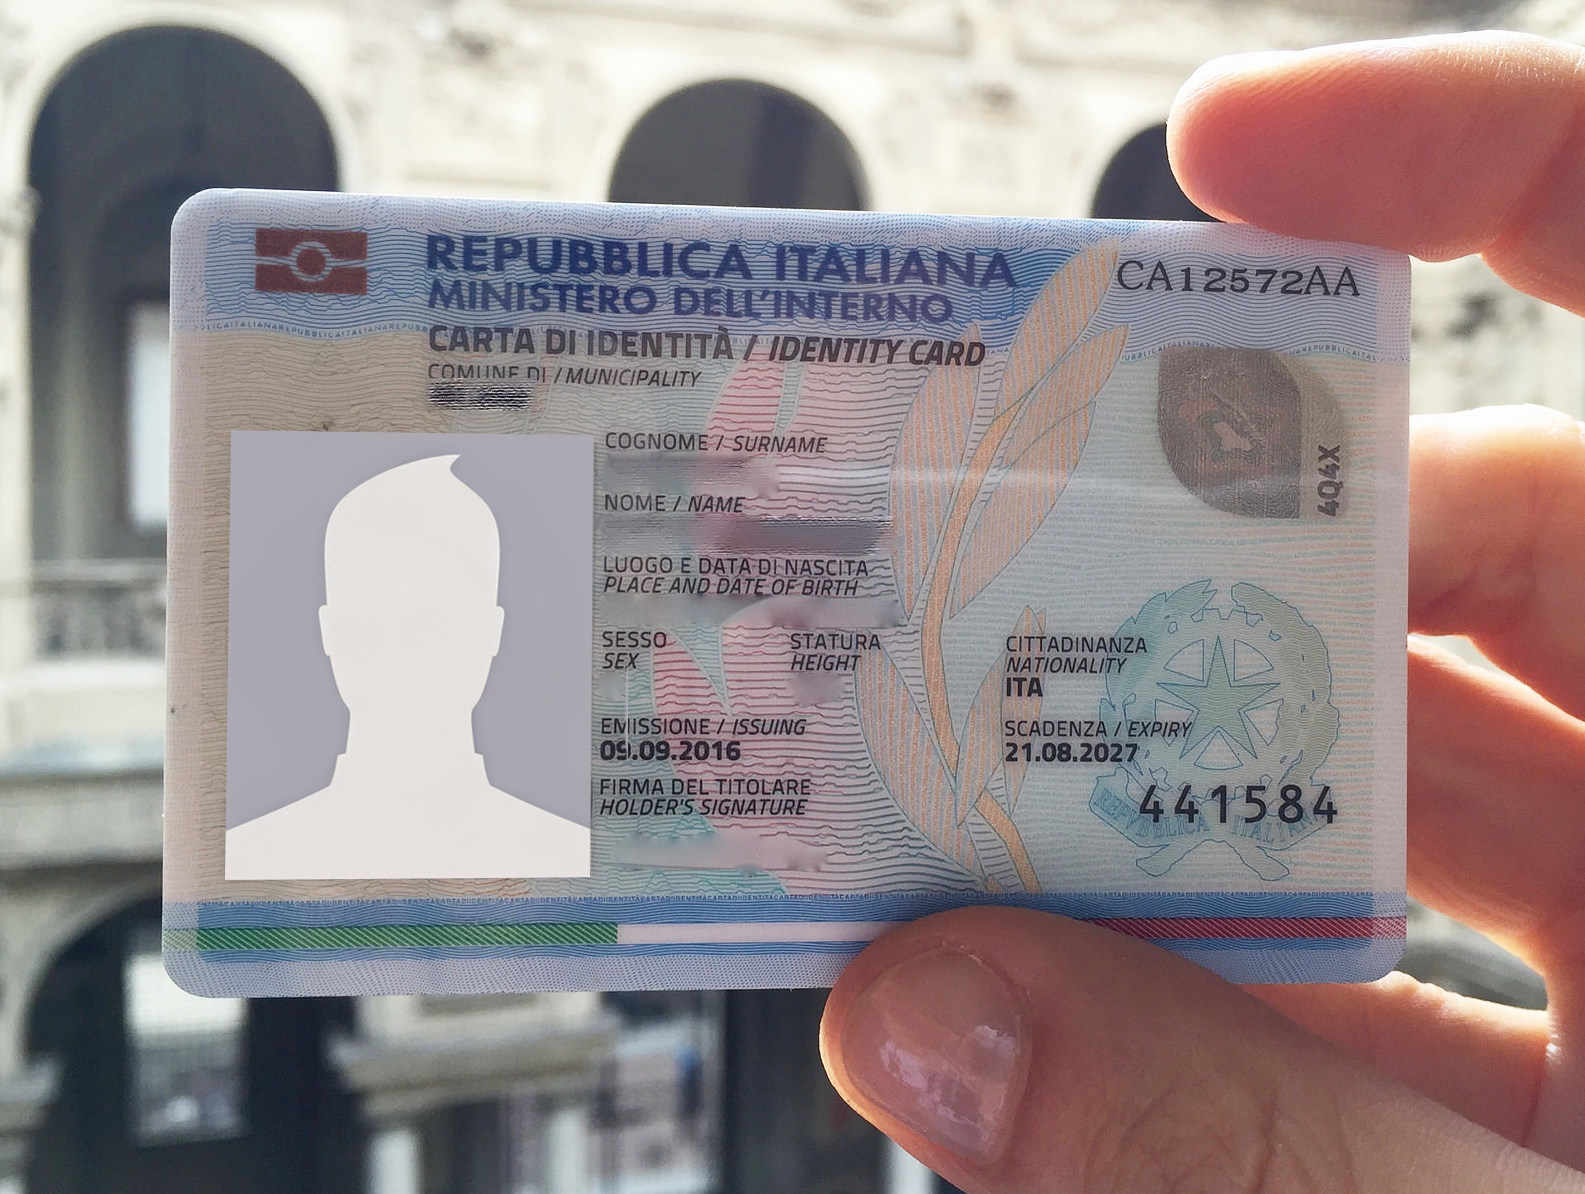 Carta d’identità elettronica: nel week end nuovo Open day nei Municipi II, VI, VII, VIII negli ex Pit, e nella sede di via Petroselli, 52